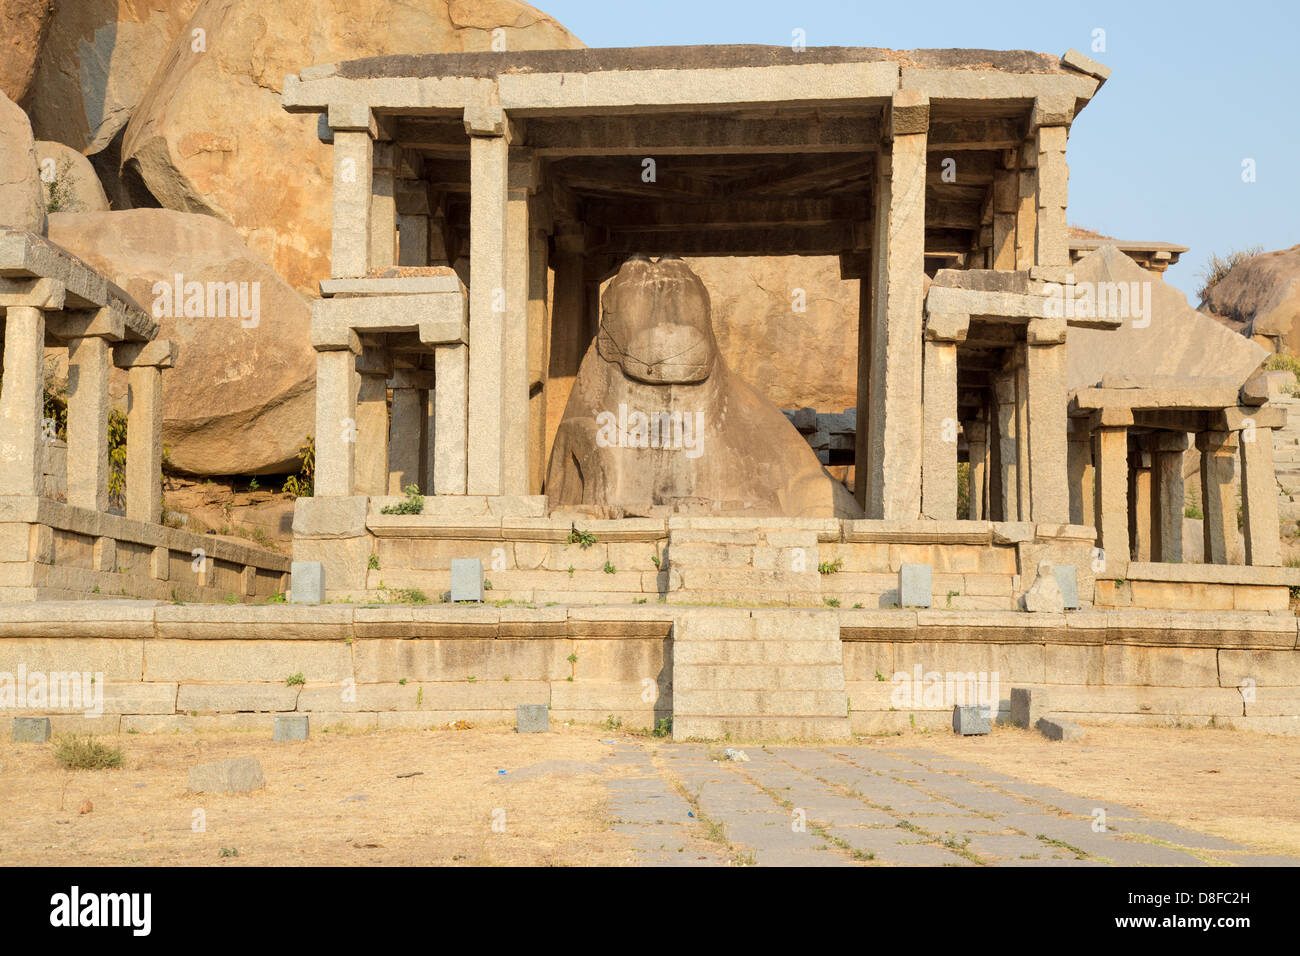 Monolithic Nandi staue and shrine, Hampi, India Stock Photo